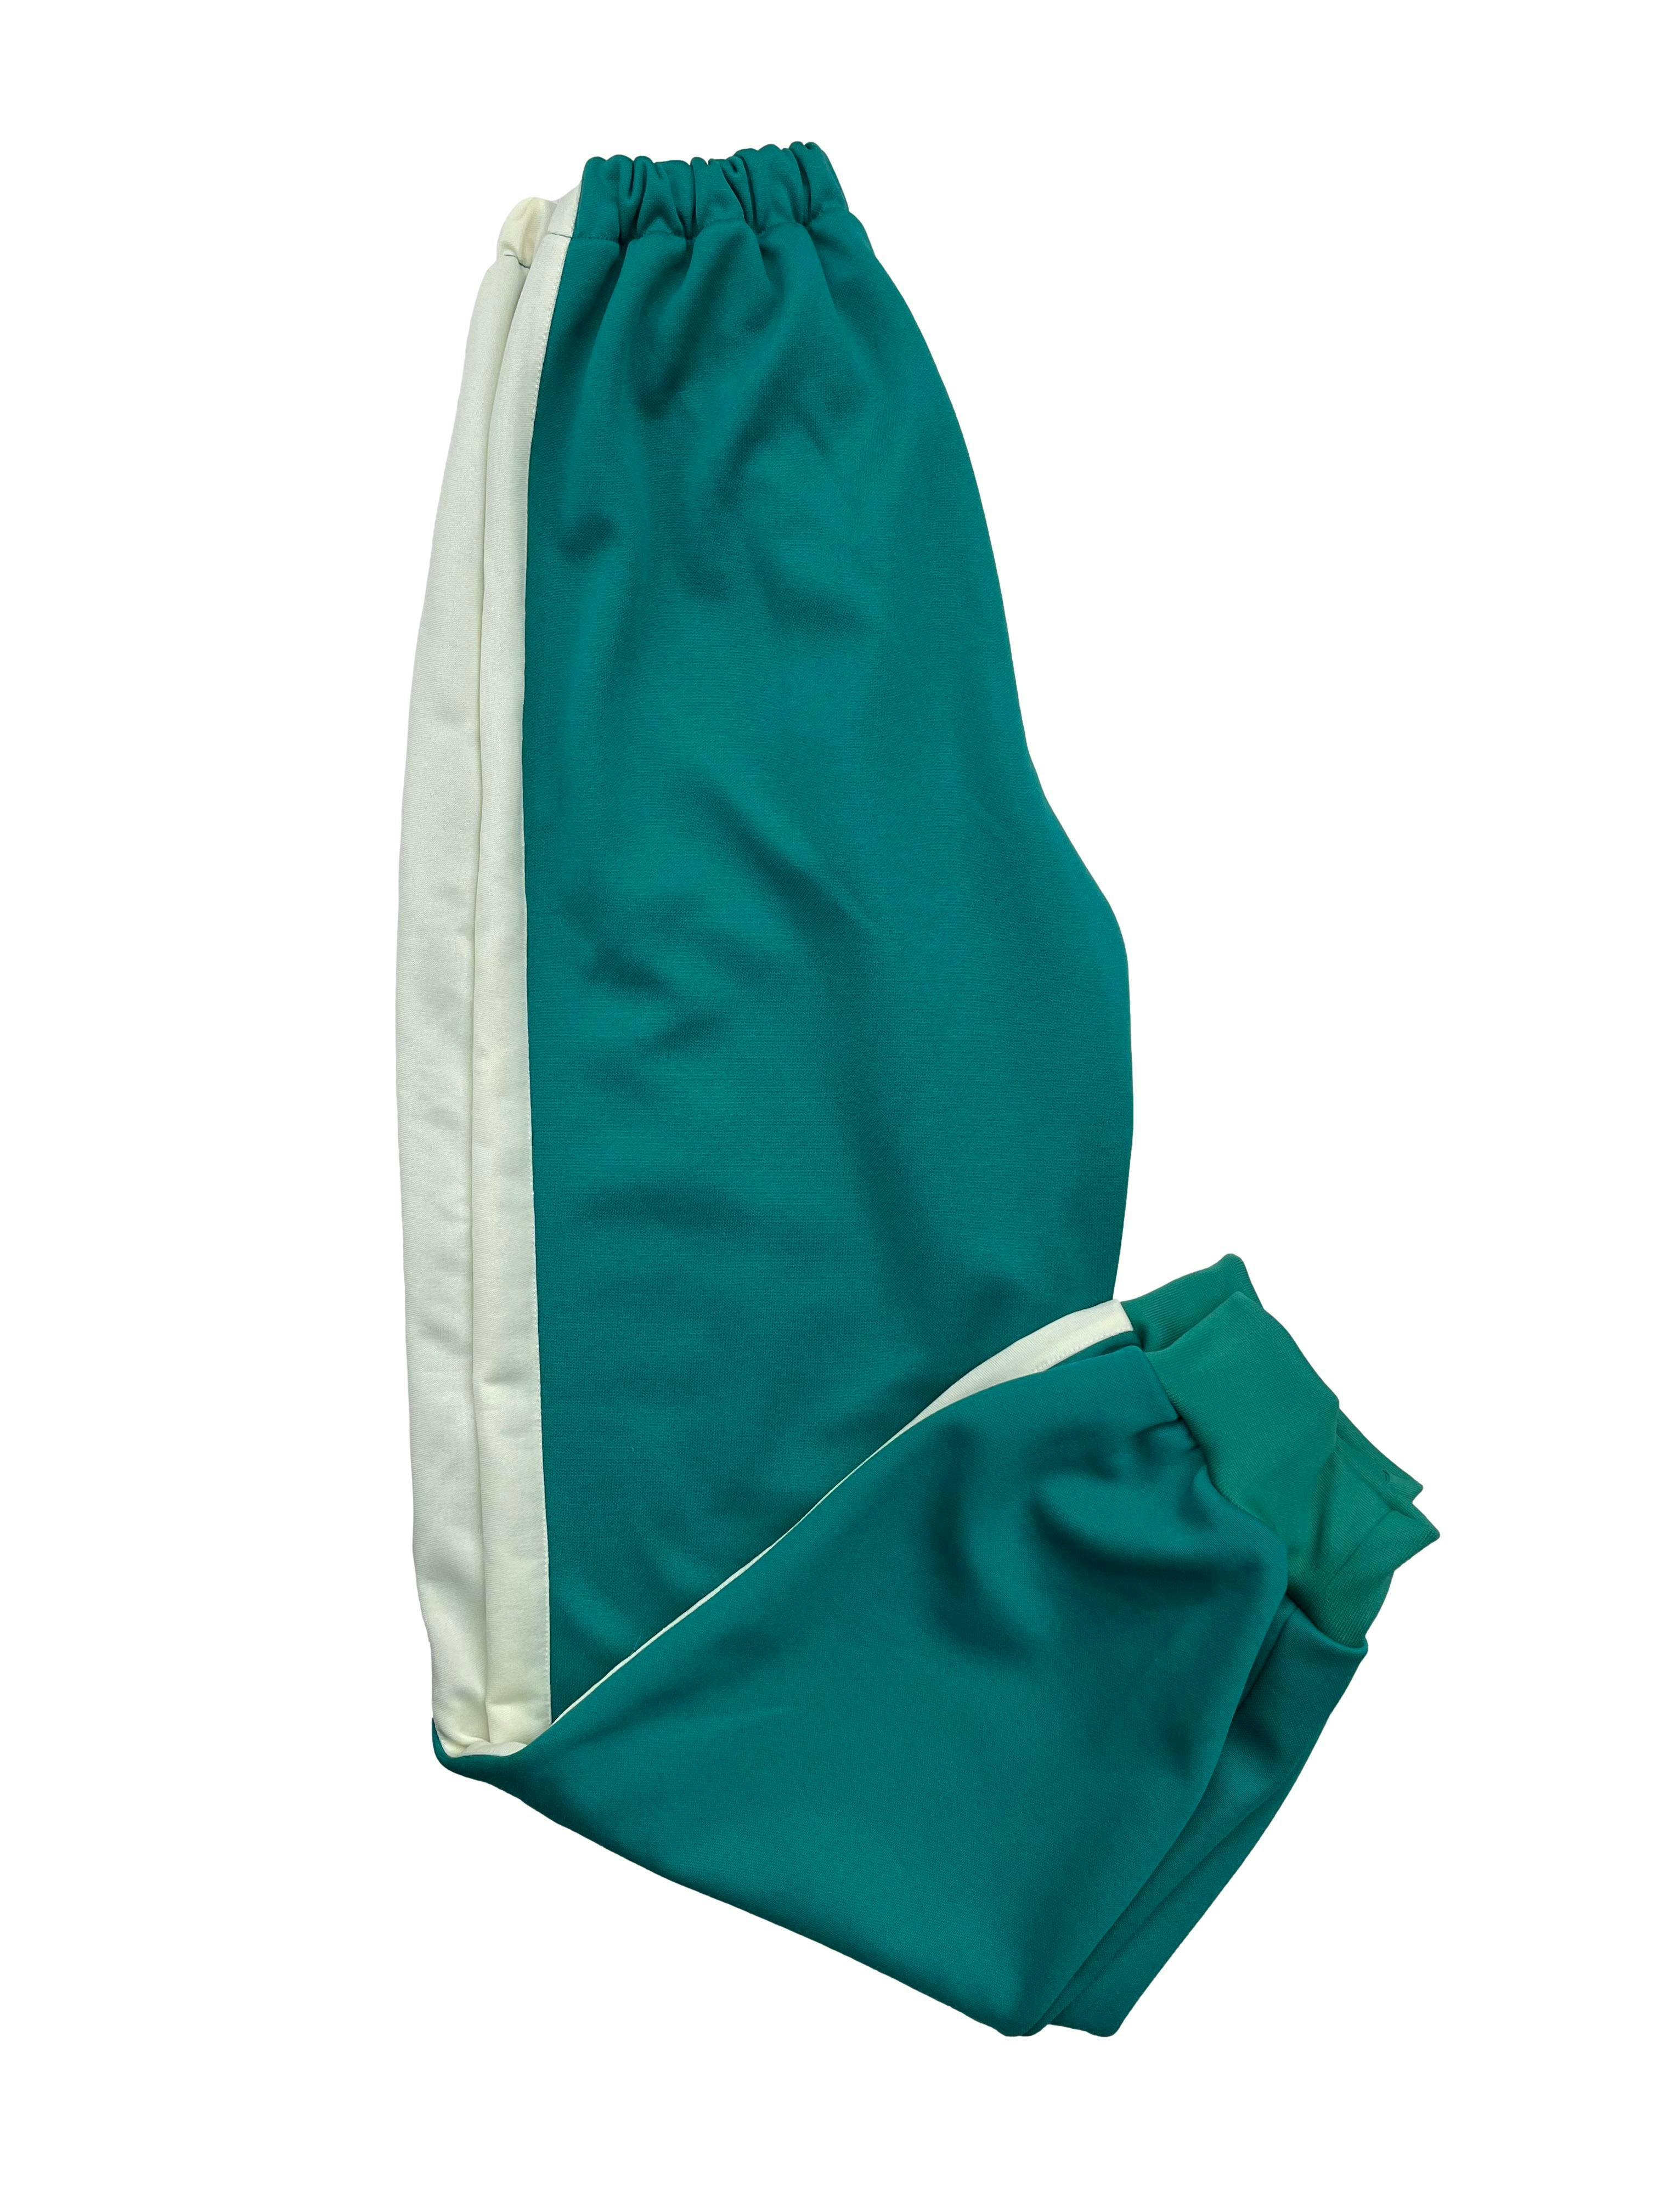 Pantalón buzo verde con líneas laterales beige, bolsillos frontales, pretina y tobillos elásticos. Cintura 52cm sin estirar, Largo 96cm.